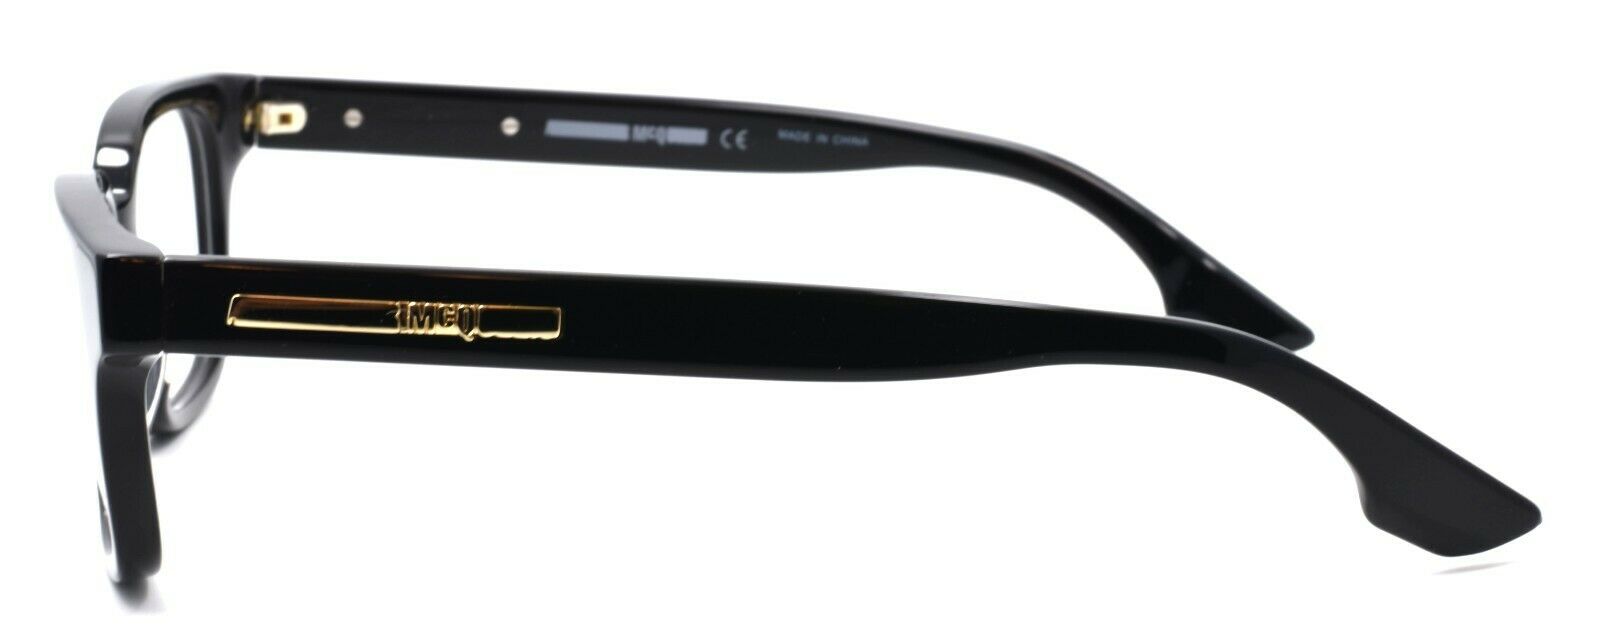 3-McQ Alexander McQueen MQ0031O 001 Unisex Eyeglasses Frames 51-17-145 Black-889652011394-IKSpecs